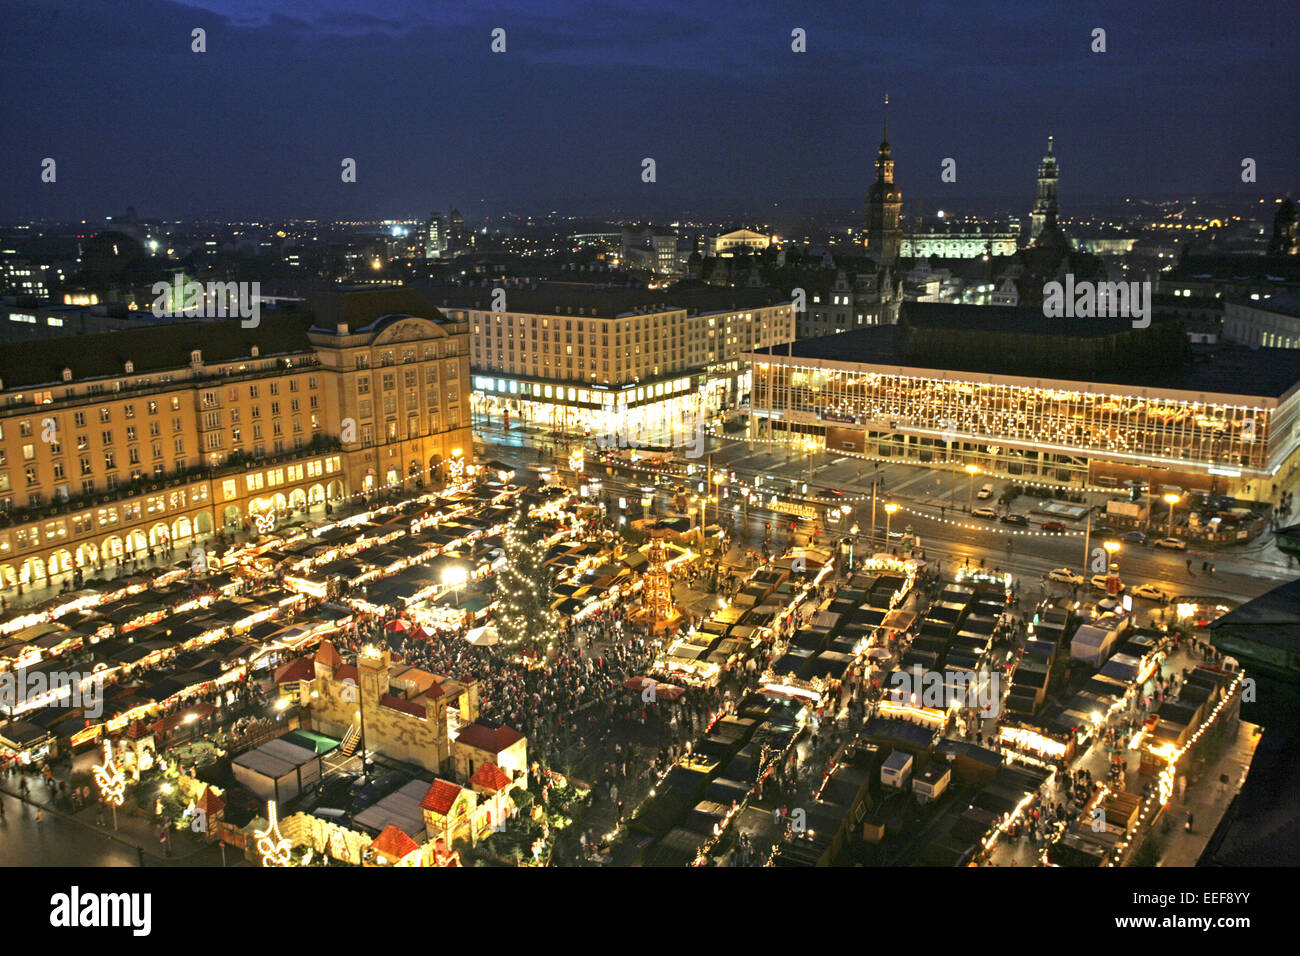 Deutschland Dresden Strietzelmarkt Uebersicht Verkaufsstaende Staende Nacht aussen beleuchtet Sachsen Adventszeit Weihnachtszeit Stock Photo